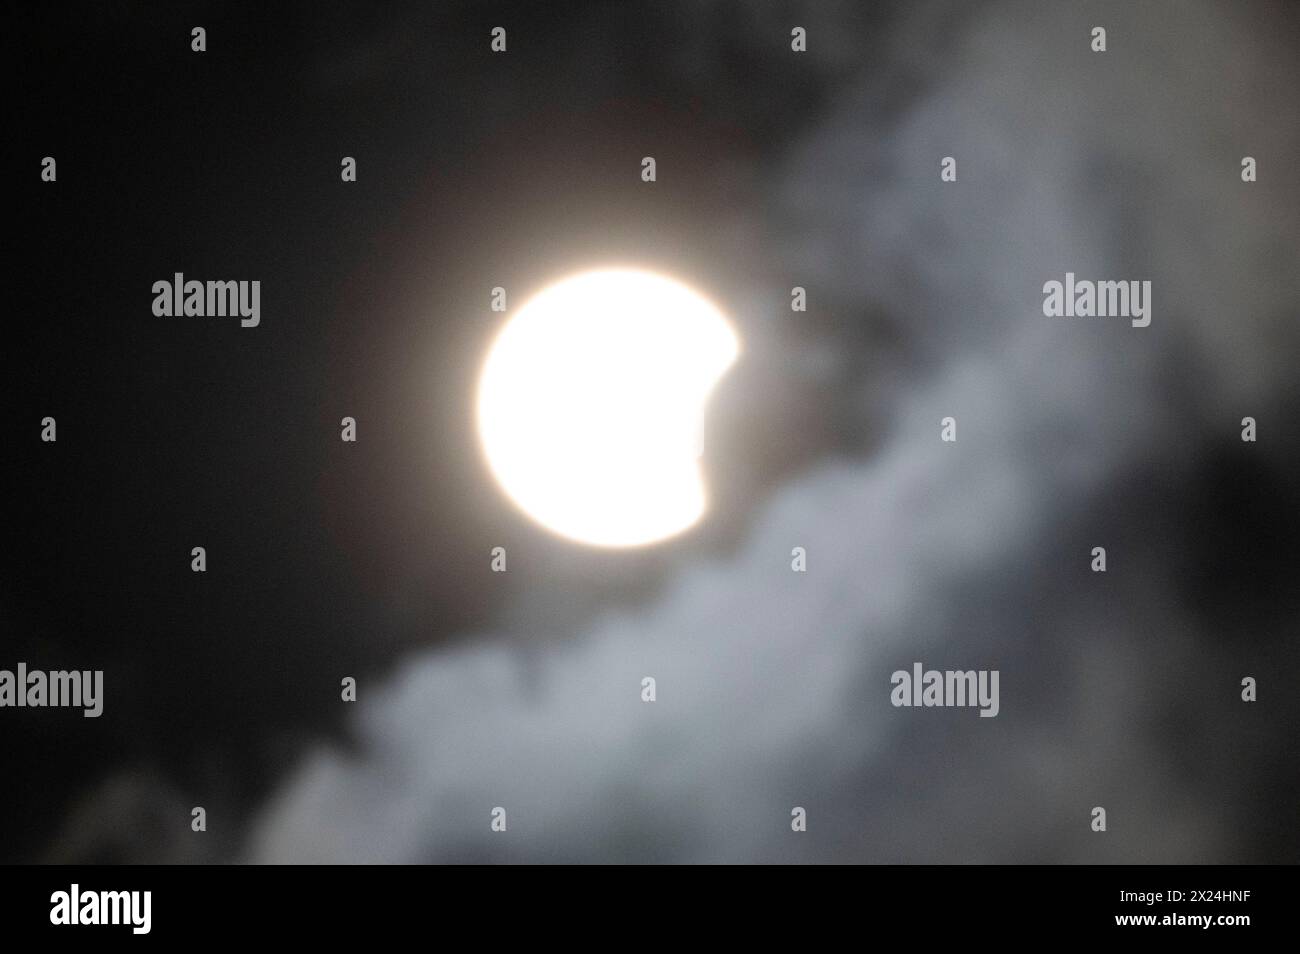 Le chemin de la totalité de l'éclipse solaire de 2024 est passé au-dessus du corps des ingénieurs de l'armée américaine, le lac Bardwell du district de Fort Worth. Situé à Ennis, Texas, le lac a offert un emplacement favorable pour voir l'éclipse à partir. Avec plus de quatre minutes de durée totale, il a donné aux photographes et aux passionnés amplement le temps de profiter de l'événement de la liste des seaux. L'éclipse maximale s'est produite à 13h42 Banque D'Images